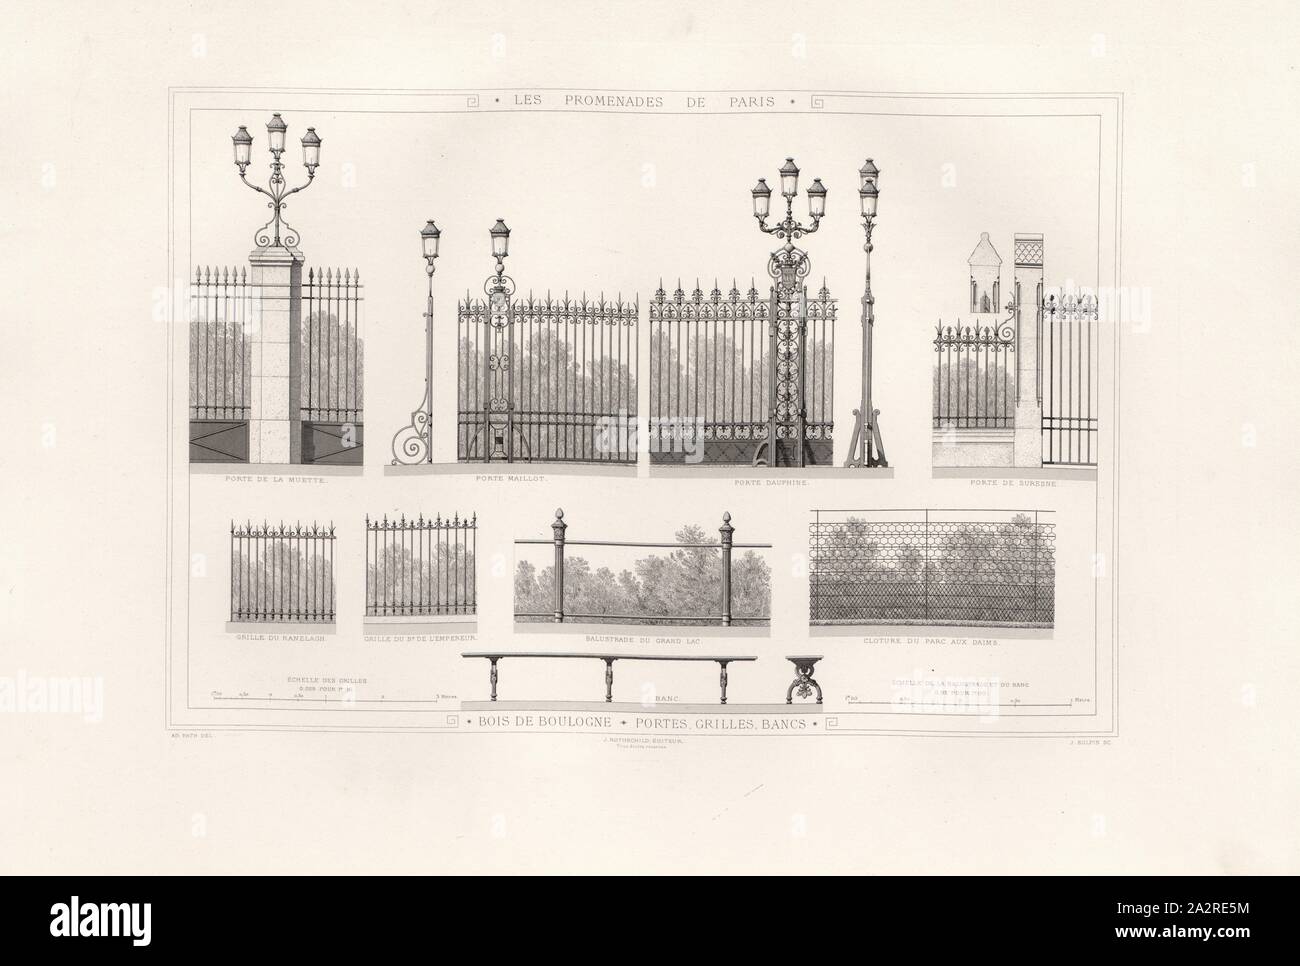 Bois de Boulogne, doors grids benches, Illustration of the benches, entrances and grille of the 19th century Boulogne Park, signed; Ad., Fath Del, J. Rotschild, Éditeur; J. Sulpis Sc, Fig. 4, p. 27, Fath, Ad. (del.); Rotschild, J. (ed.); Sulpis, J. (sc.), Adolphe Alphand: Les promenades de Paris [...]. Planches. Paris: par J. Rothschild, 1867 Stock Photo